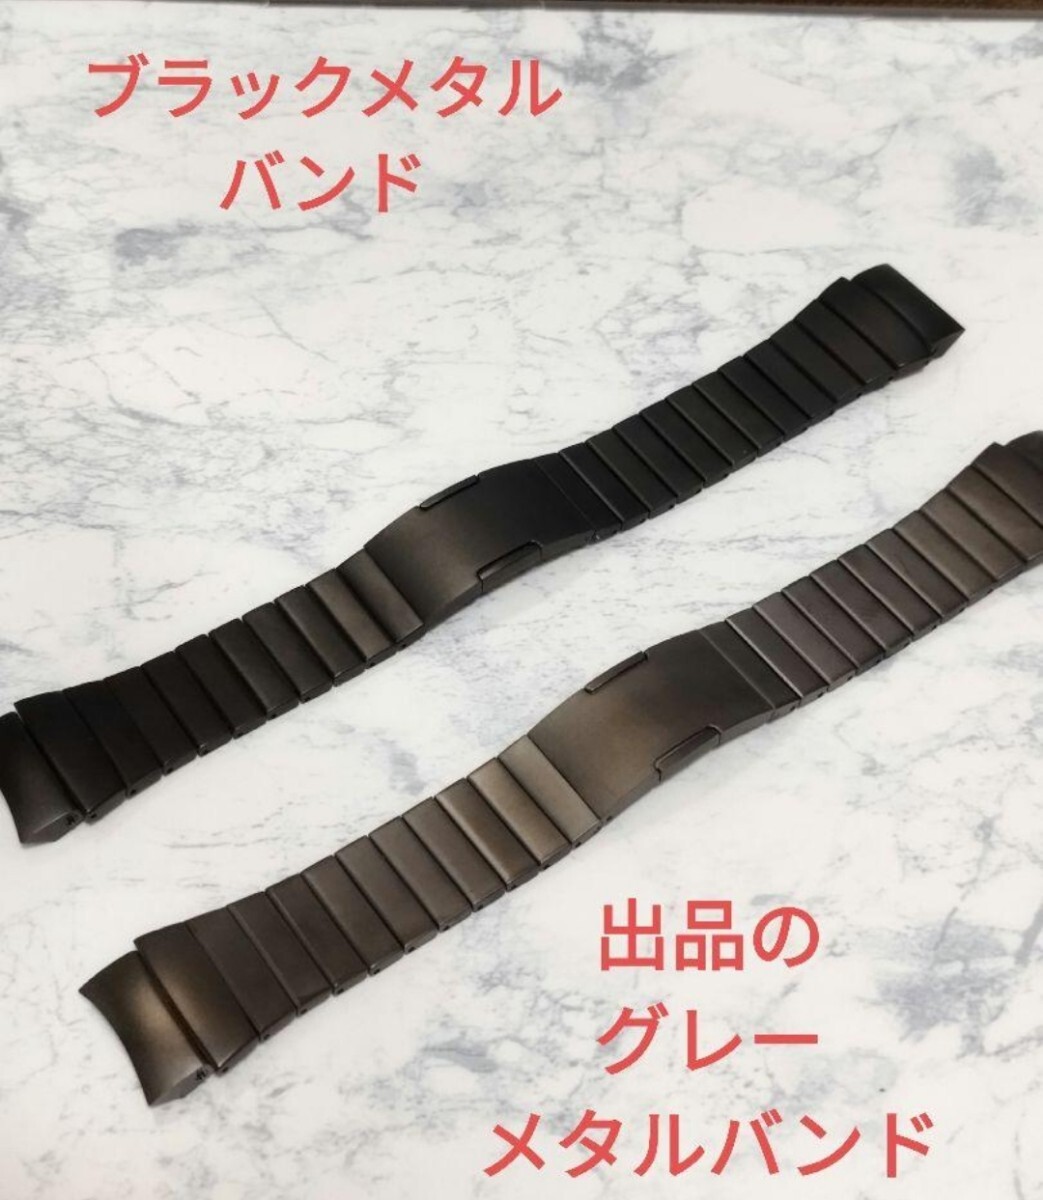  ограничение huawei Watch gt4 gray metallic ru частота особый дизайн 